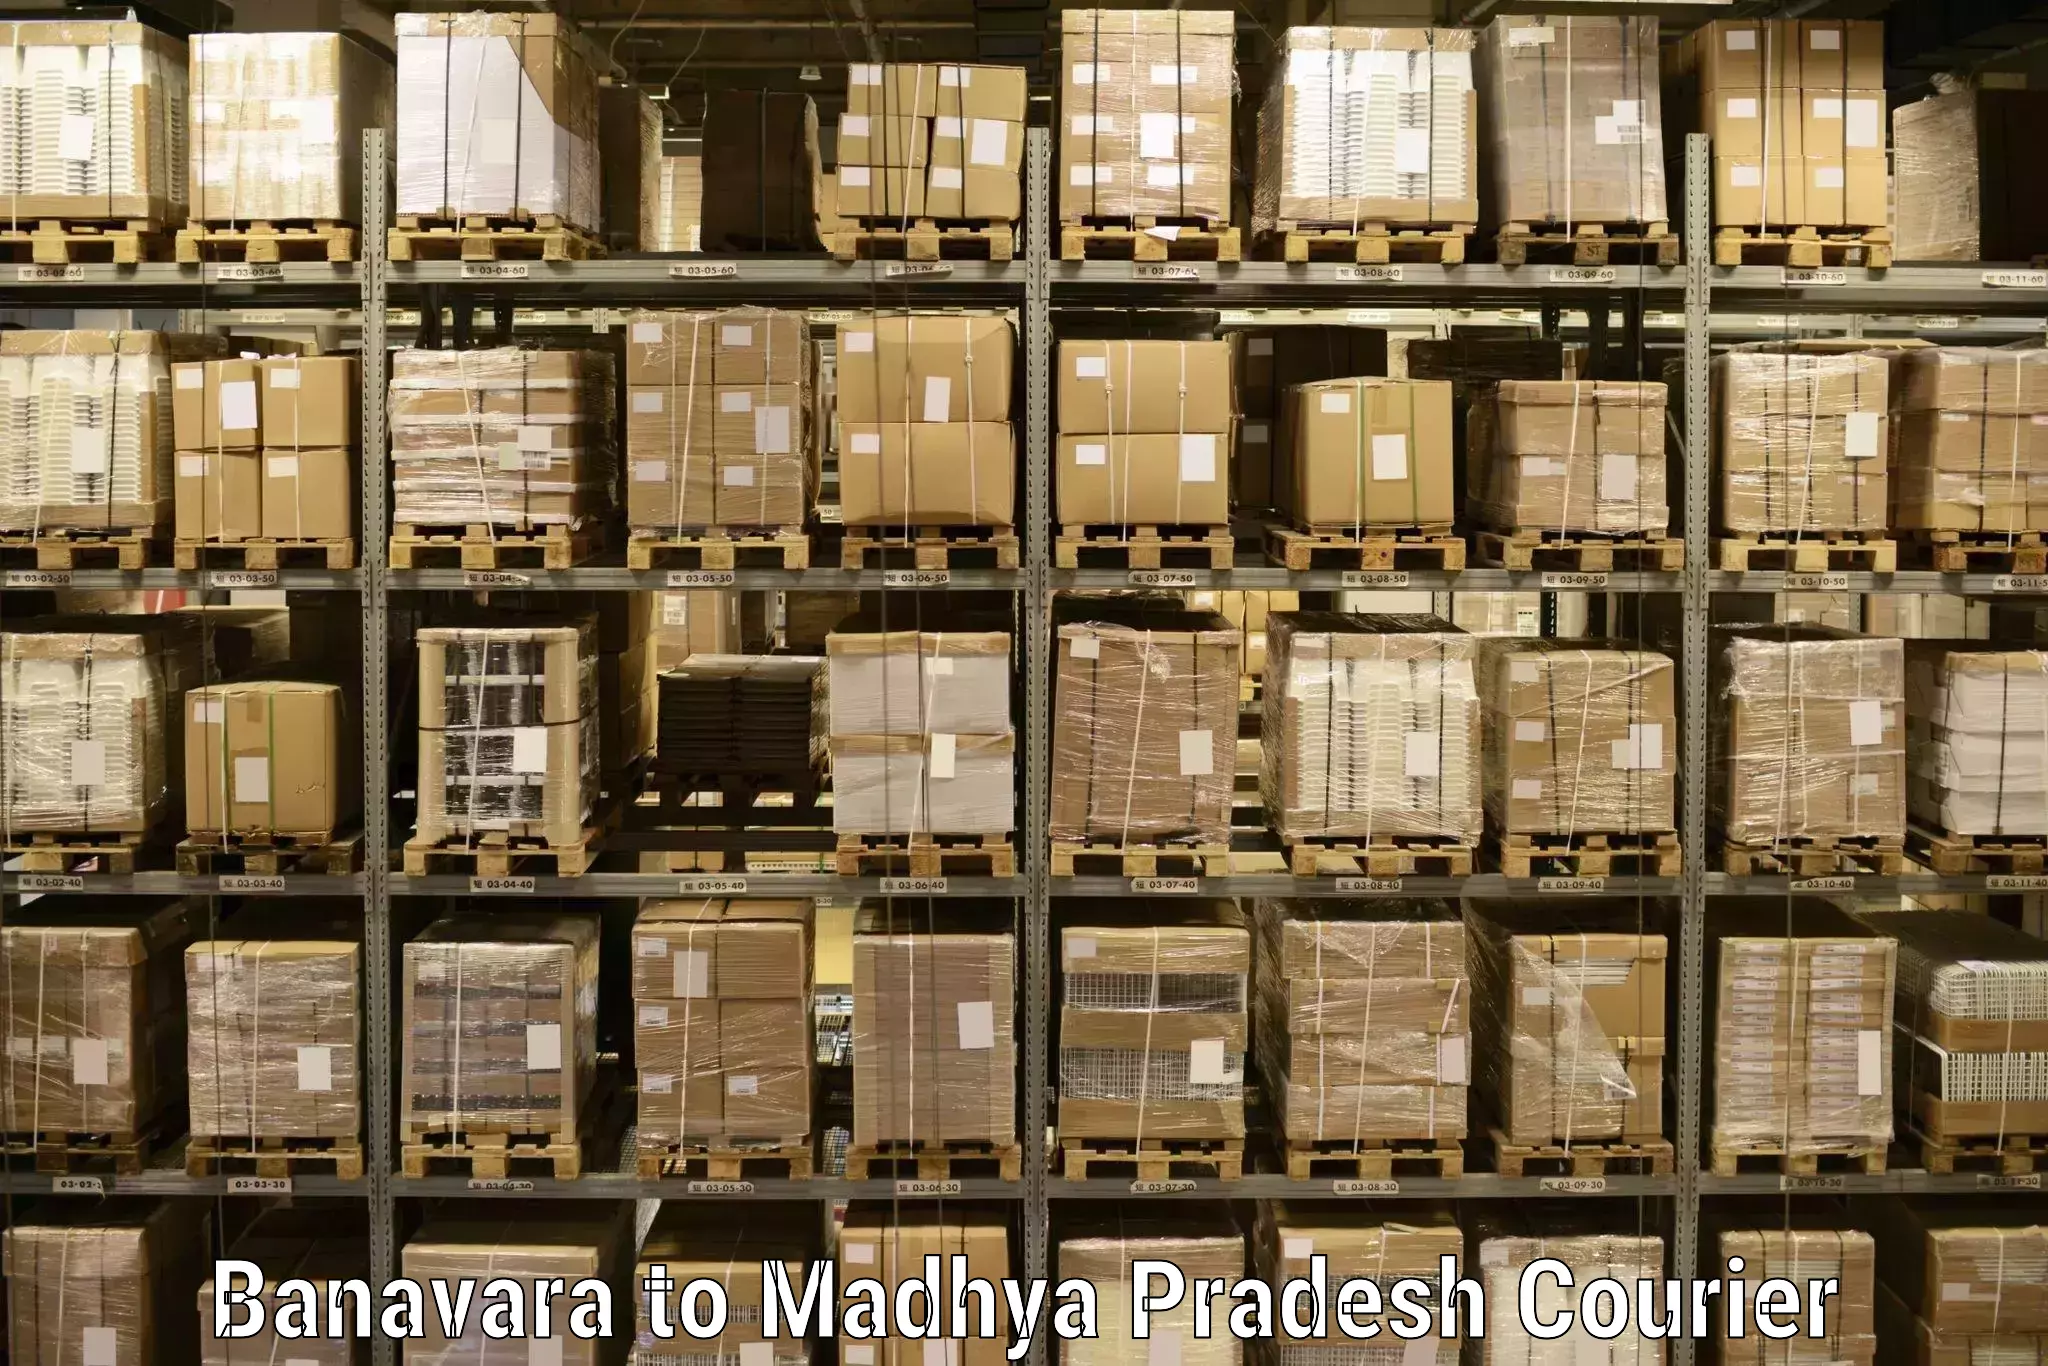 Full-service courier options Banavara to Garh Rewa